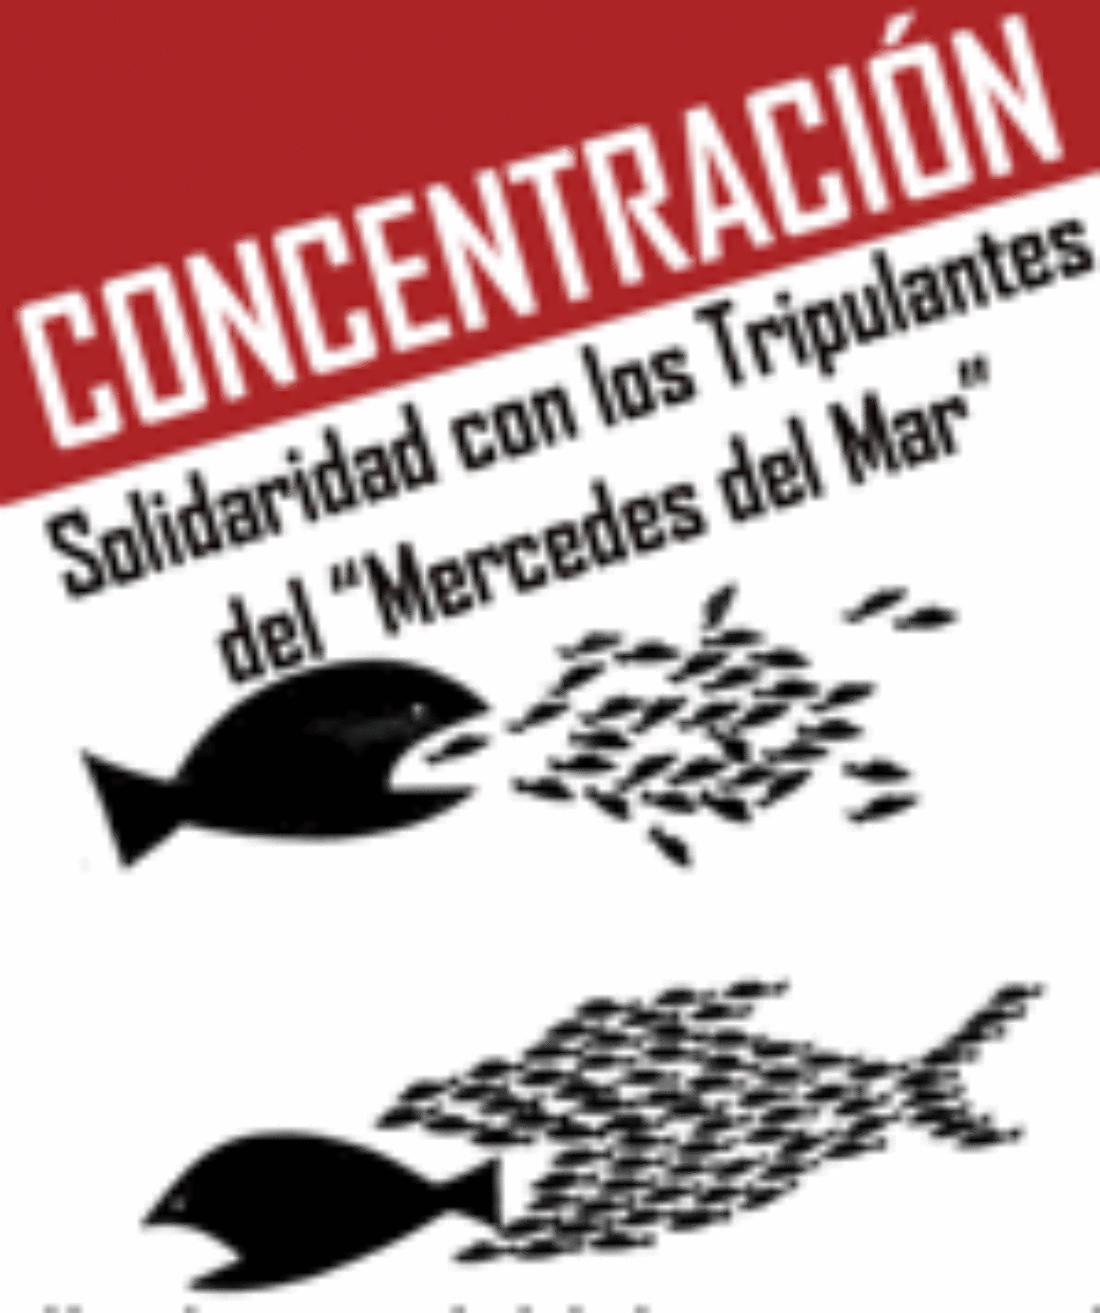 13 noviembre, Valencia : Concentración en solidaridad con los tripulantes del Mercedes del Mar